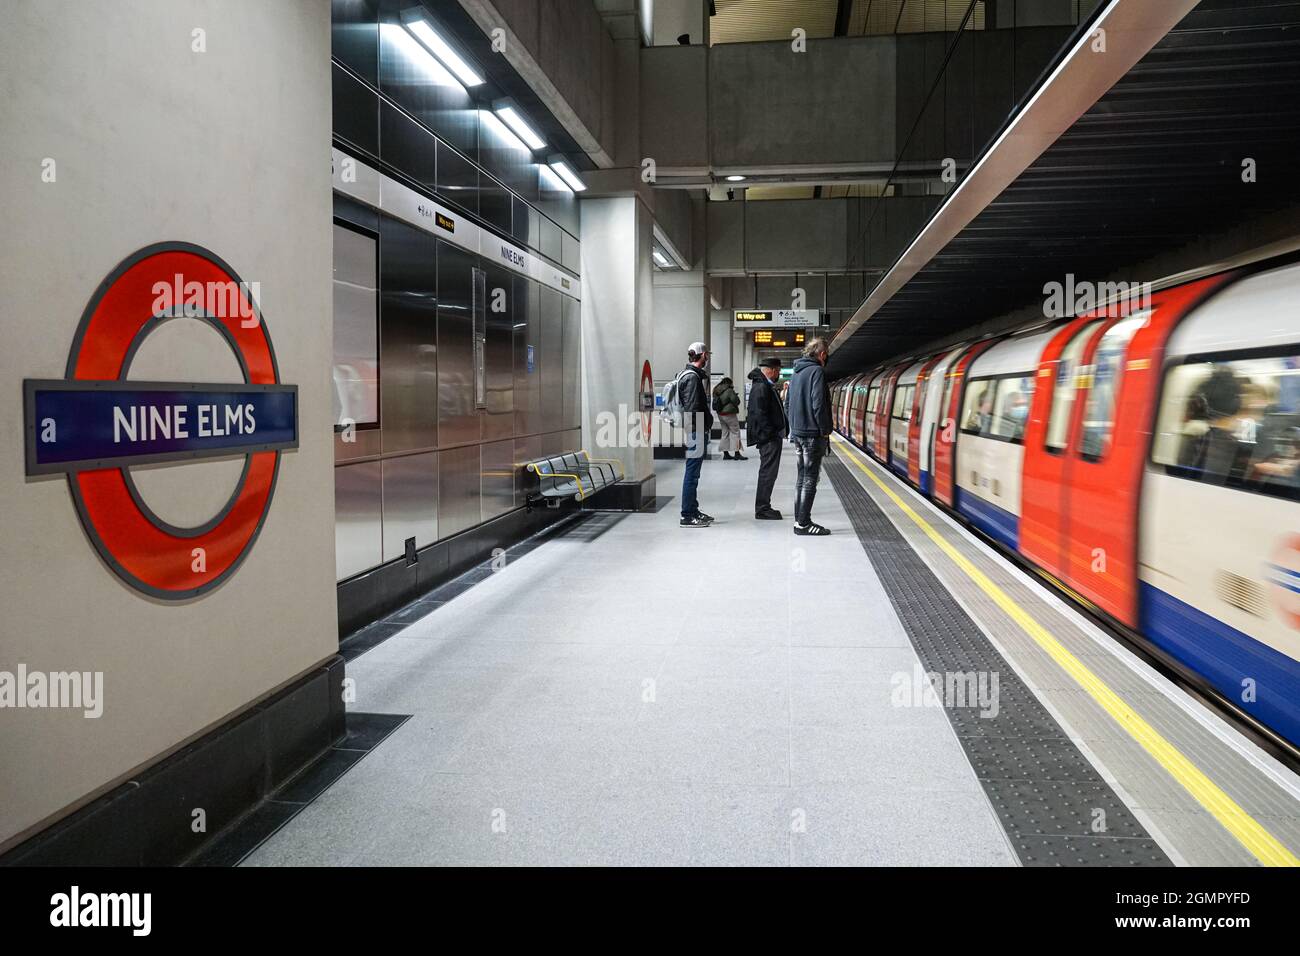 Métro de Londres a récemment ouvert neuf stations Elms sur la ligne Nord, Londres, Angleterre Royaume-Uni Banque D'Images